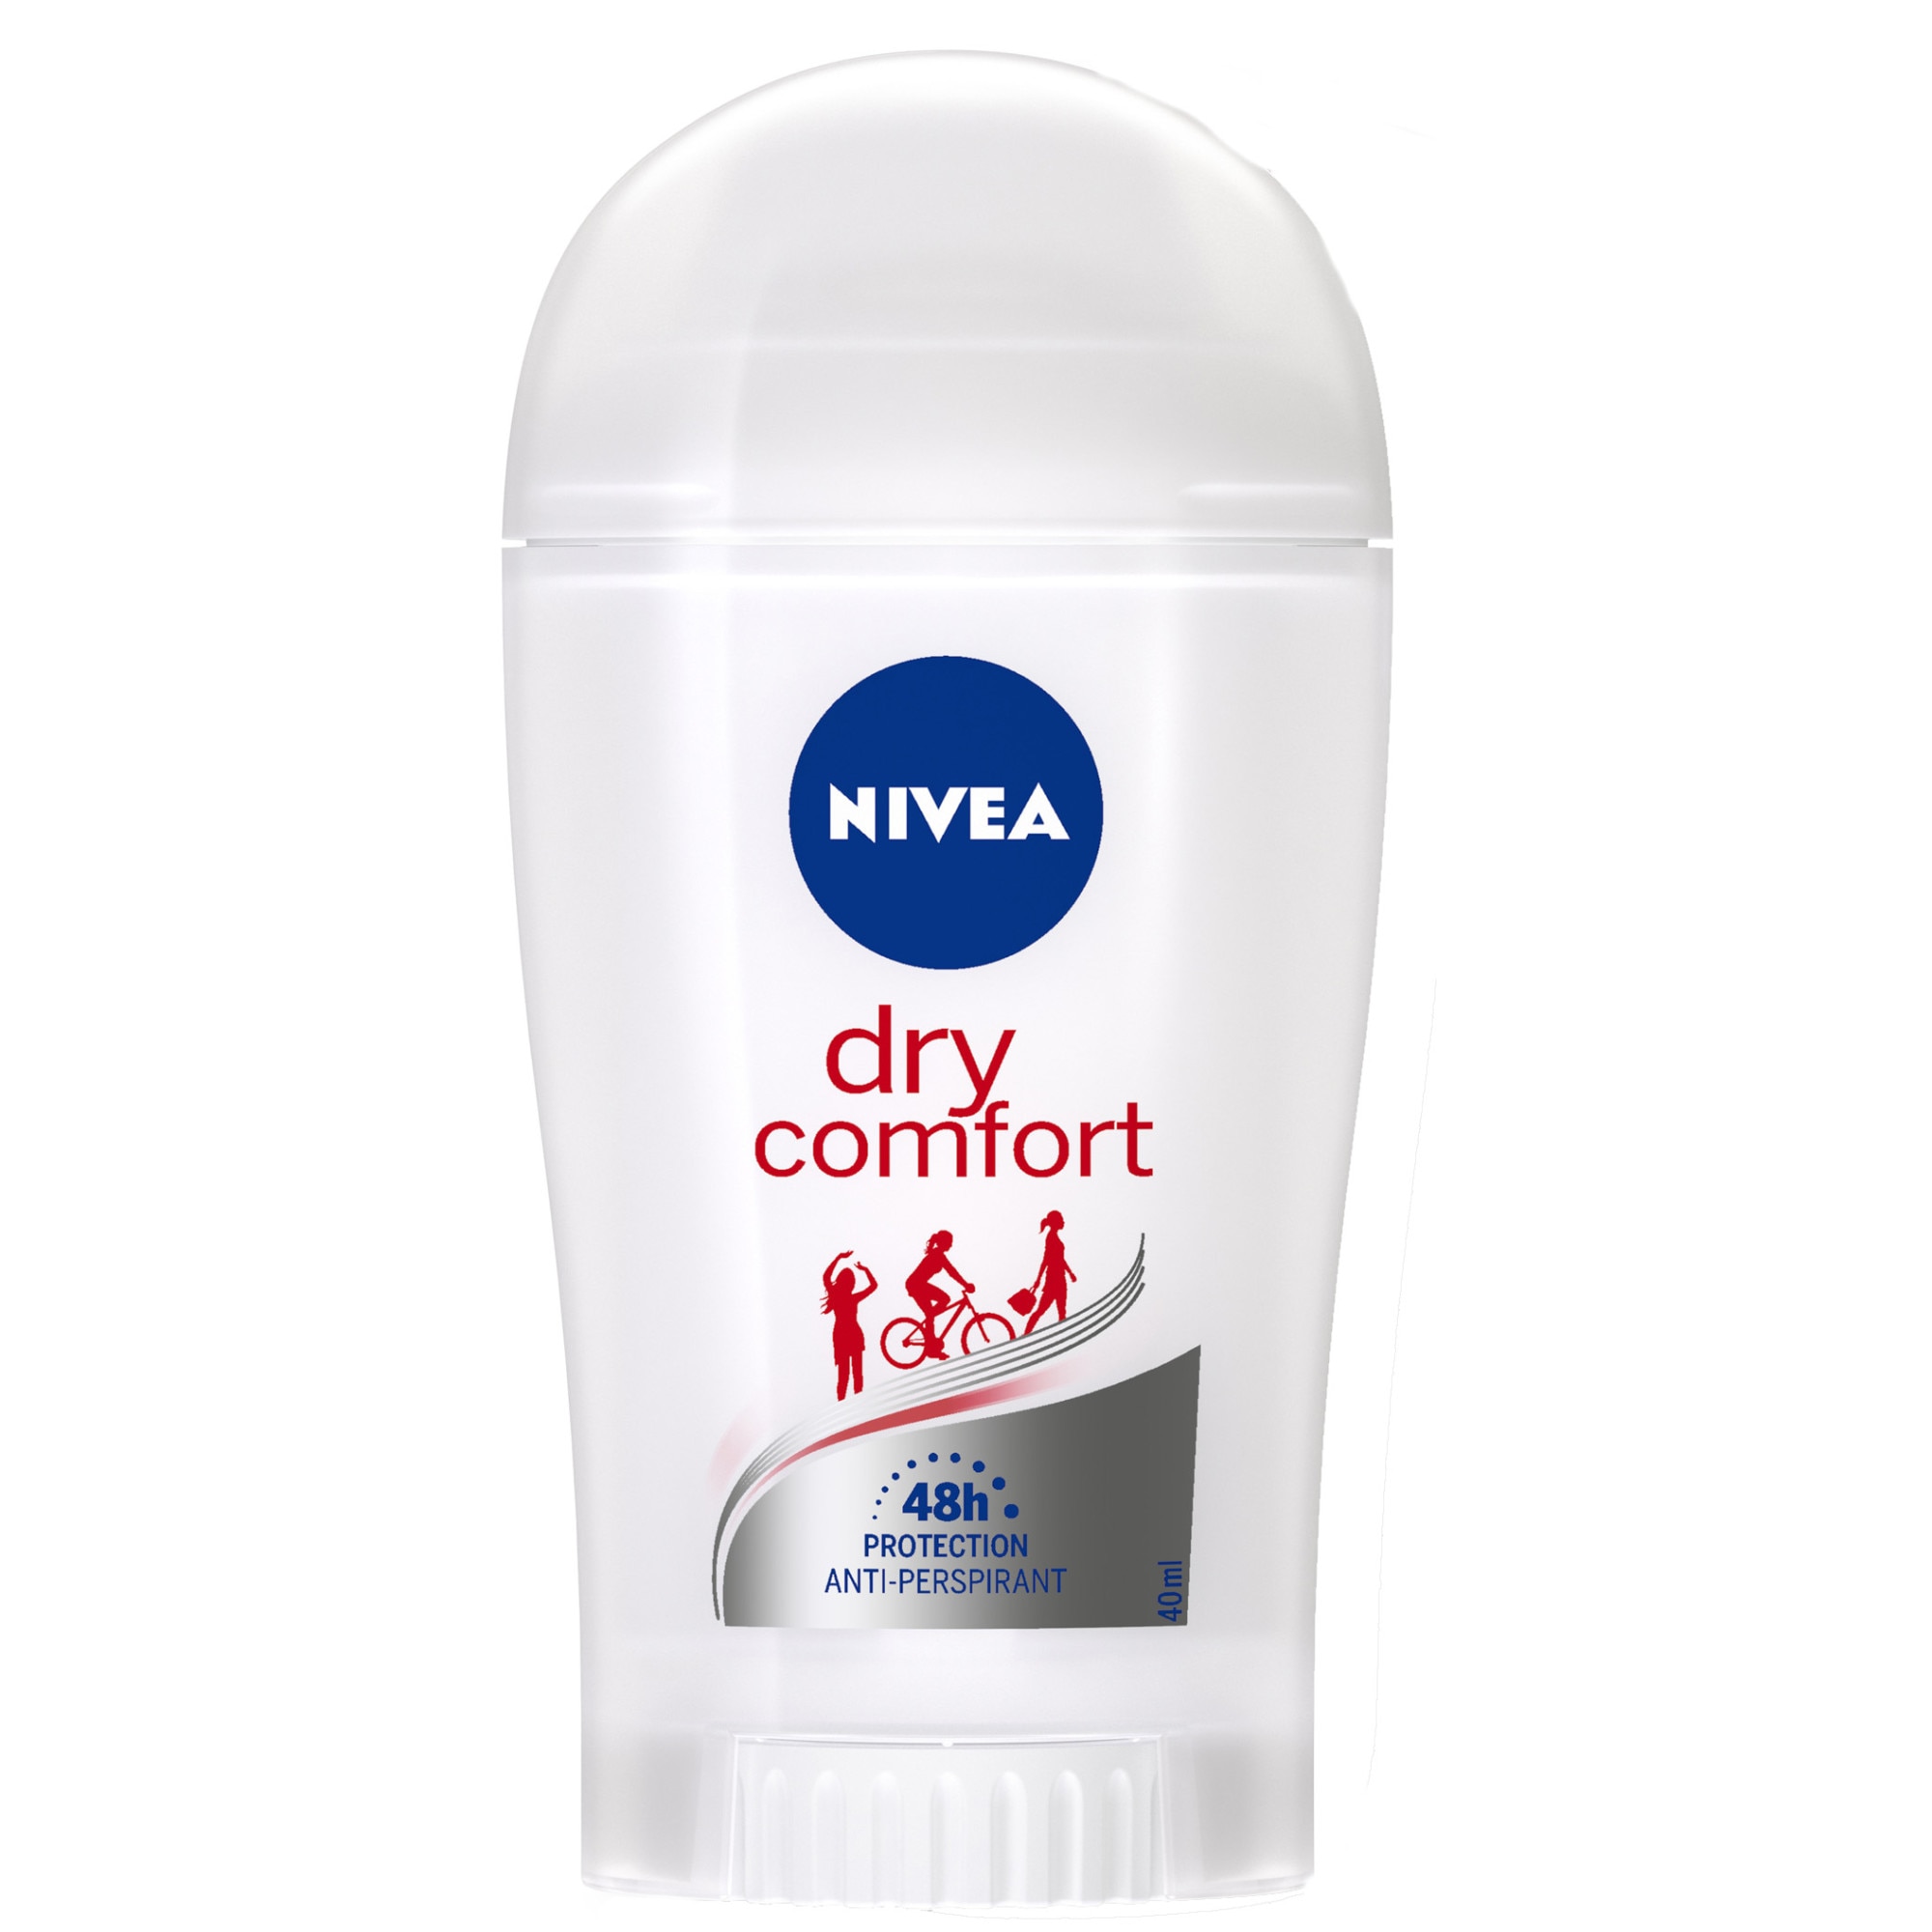 Нивея стик. Nivea Anti Perspirant Dry Comfort. Nivea Dry Comfort дезодорант. Антиперспирант Nivea стик. Nivea дезодорант стик.